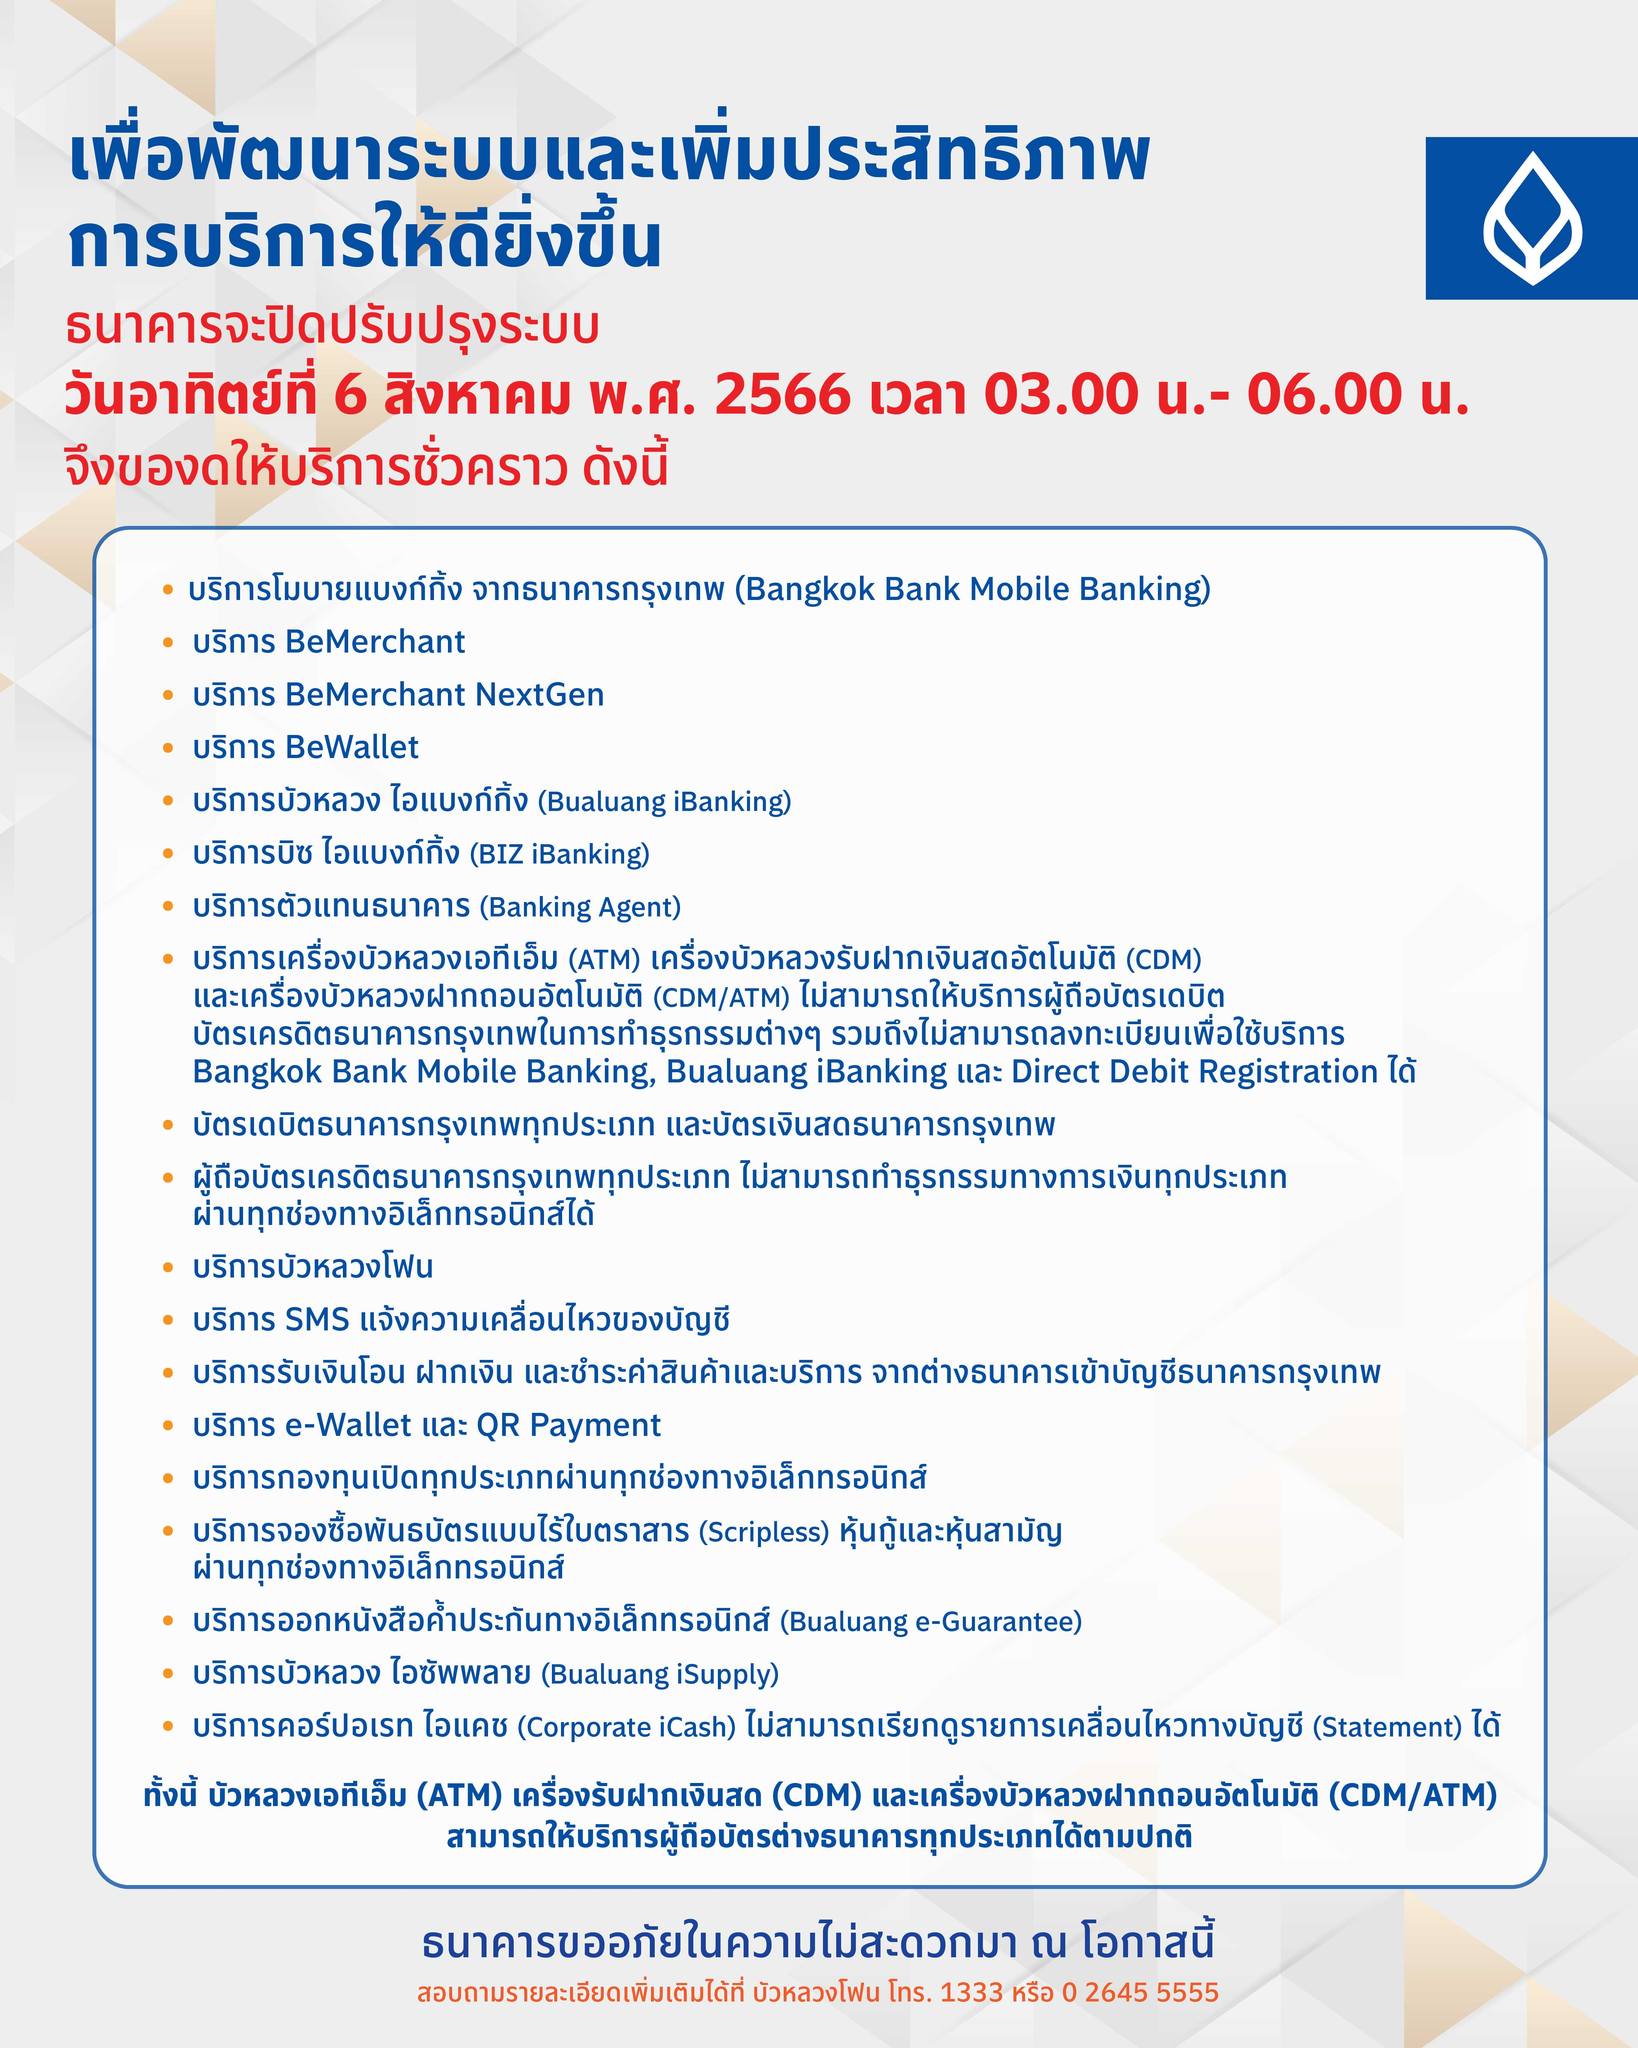 ธนาคารปิดปรับปรุง สิงหาคม 2566 ธนาคาร 4 แห่ง แจ้งวัน เวลา ดังนี้ | Thaiger  ข่าวไทย